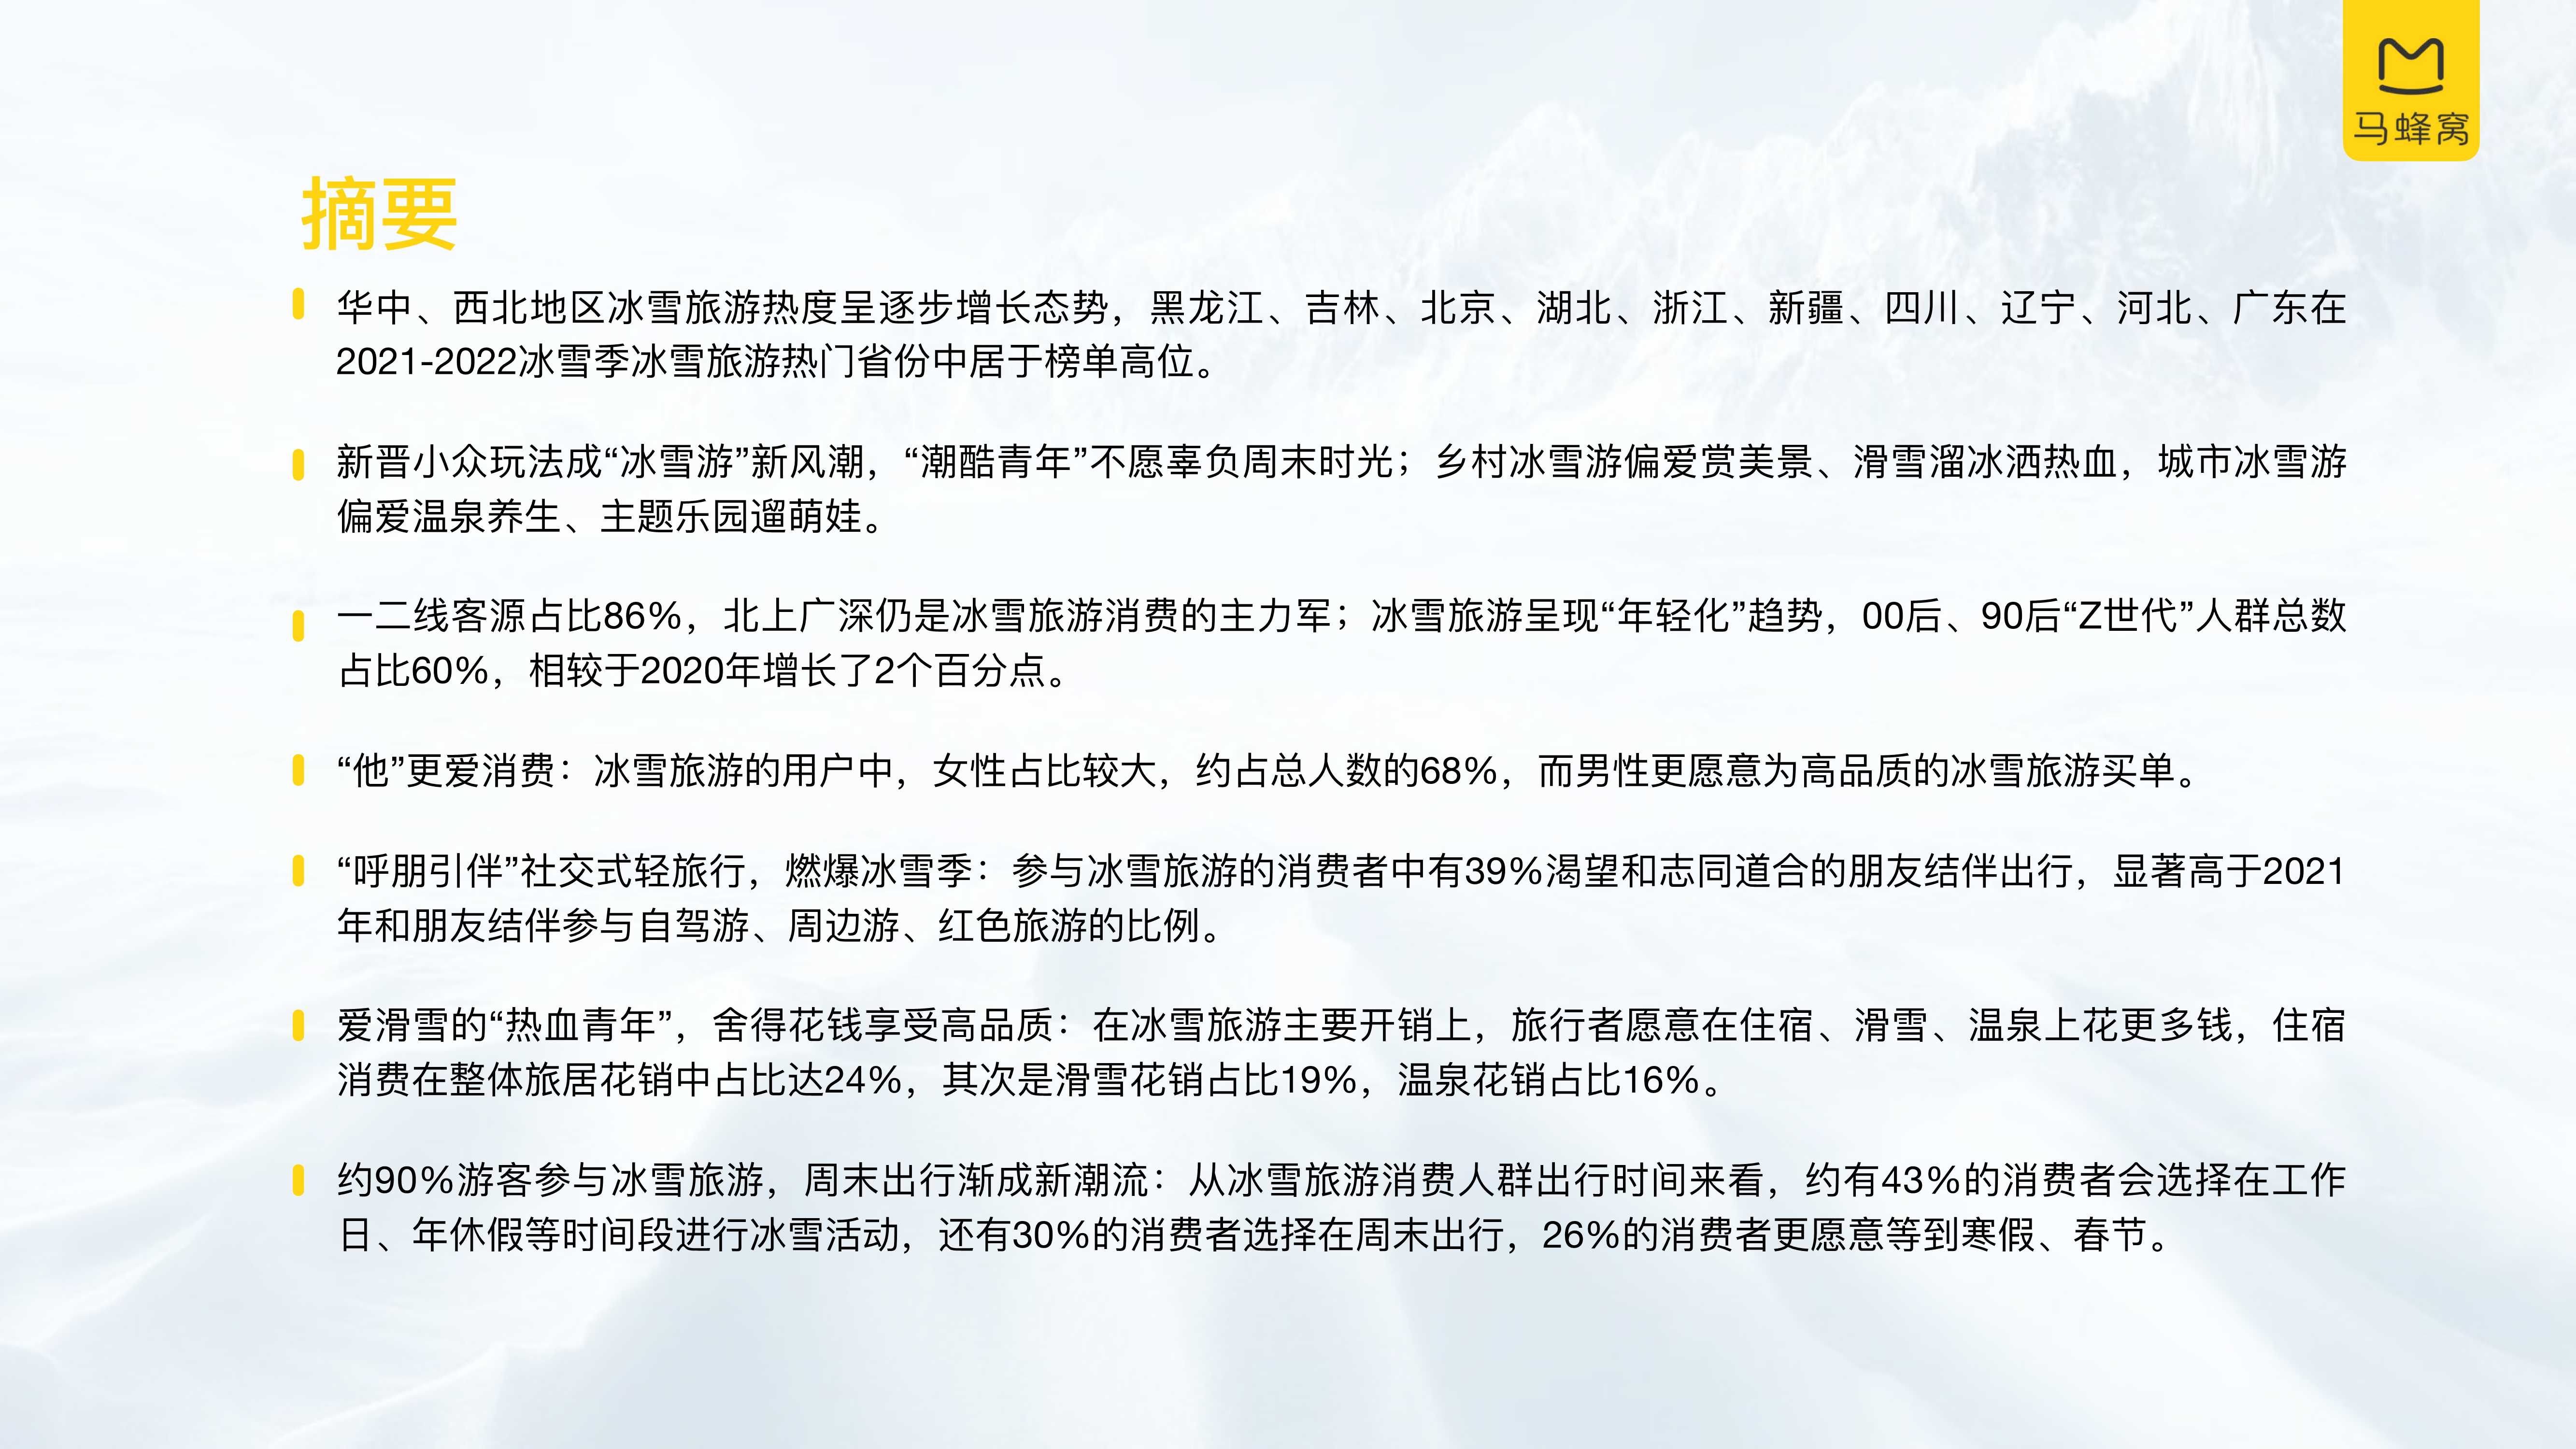 马蜂窝&中国旅游研究院-中国冰雪旅游消费大数据报告（2022）-2022.01-27页